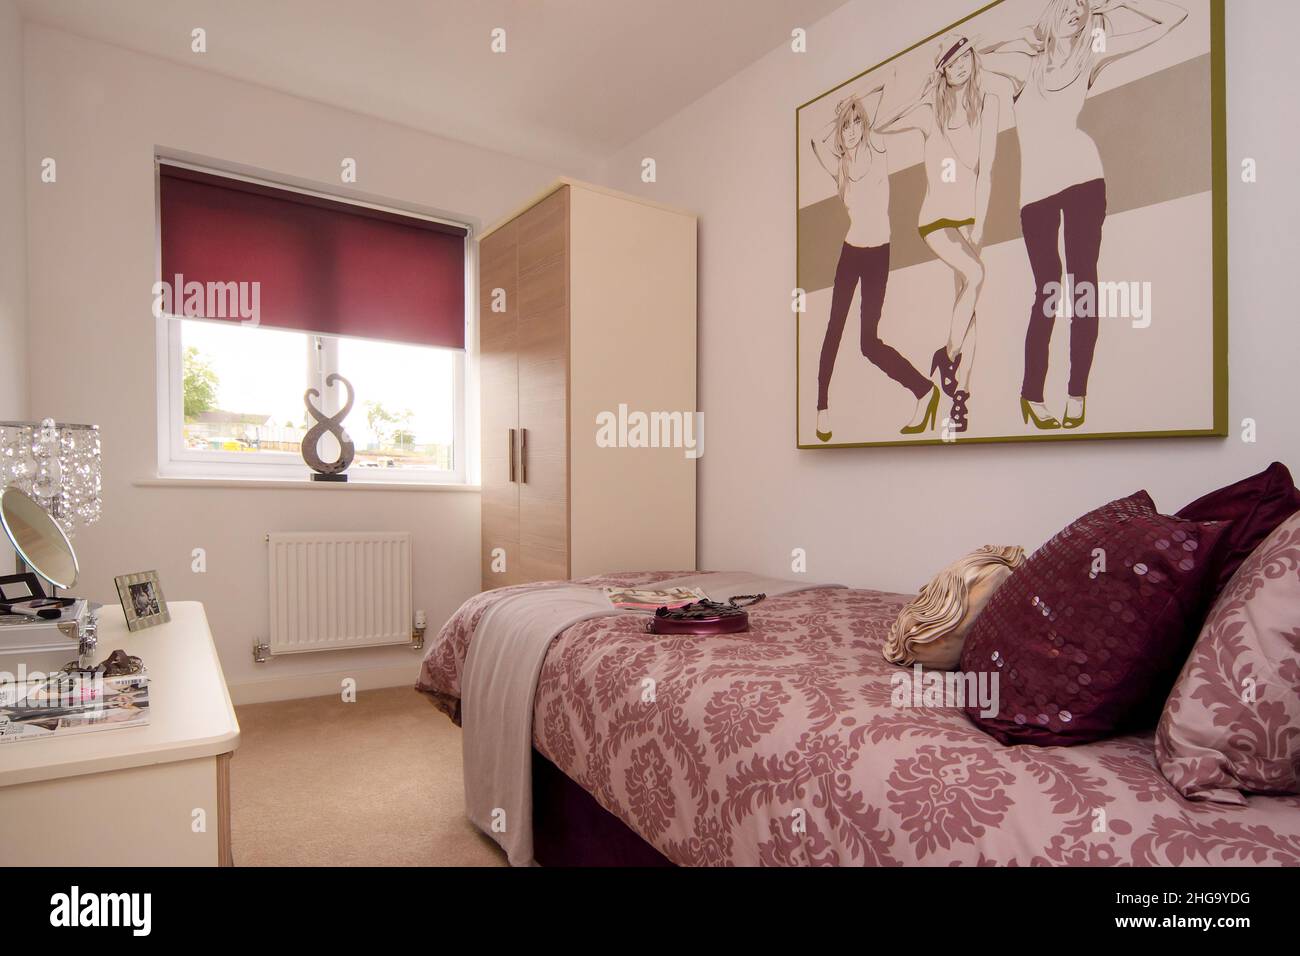 Adolescente escena dormitorio niñas, estilo moda tema, postere, cama, color rosa oscuro esquema de colores, cojines, Foto de stock